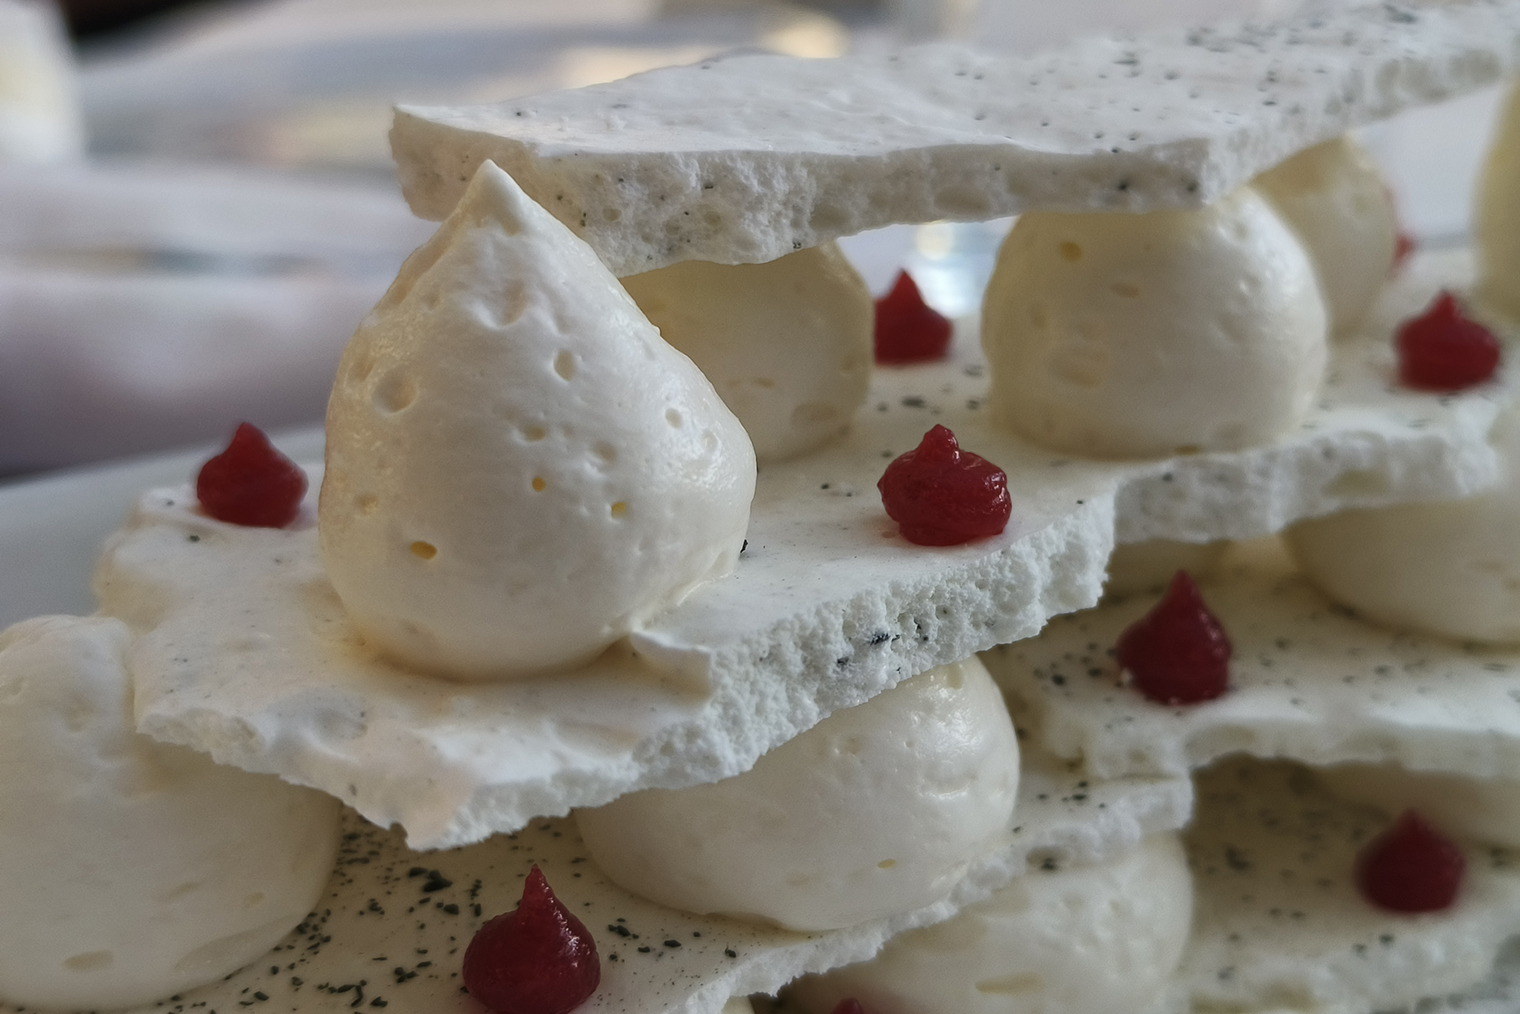 Этот десерт — знаменитая «Павлова», но необычной формы и с сахалинскими ягодами. Двукратный зум позволяет лучше рассмотреть текстуру пирожного